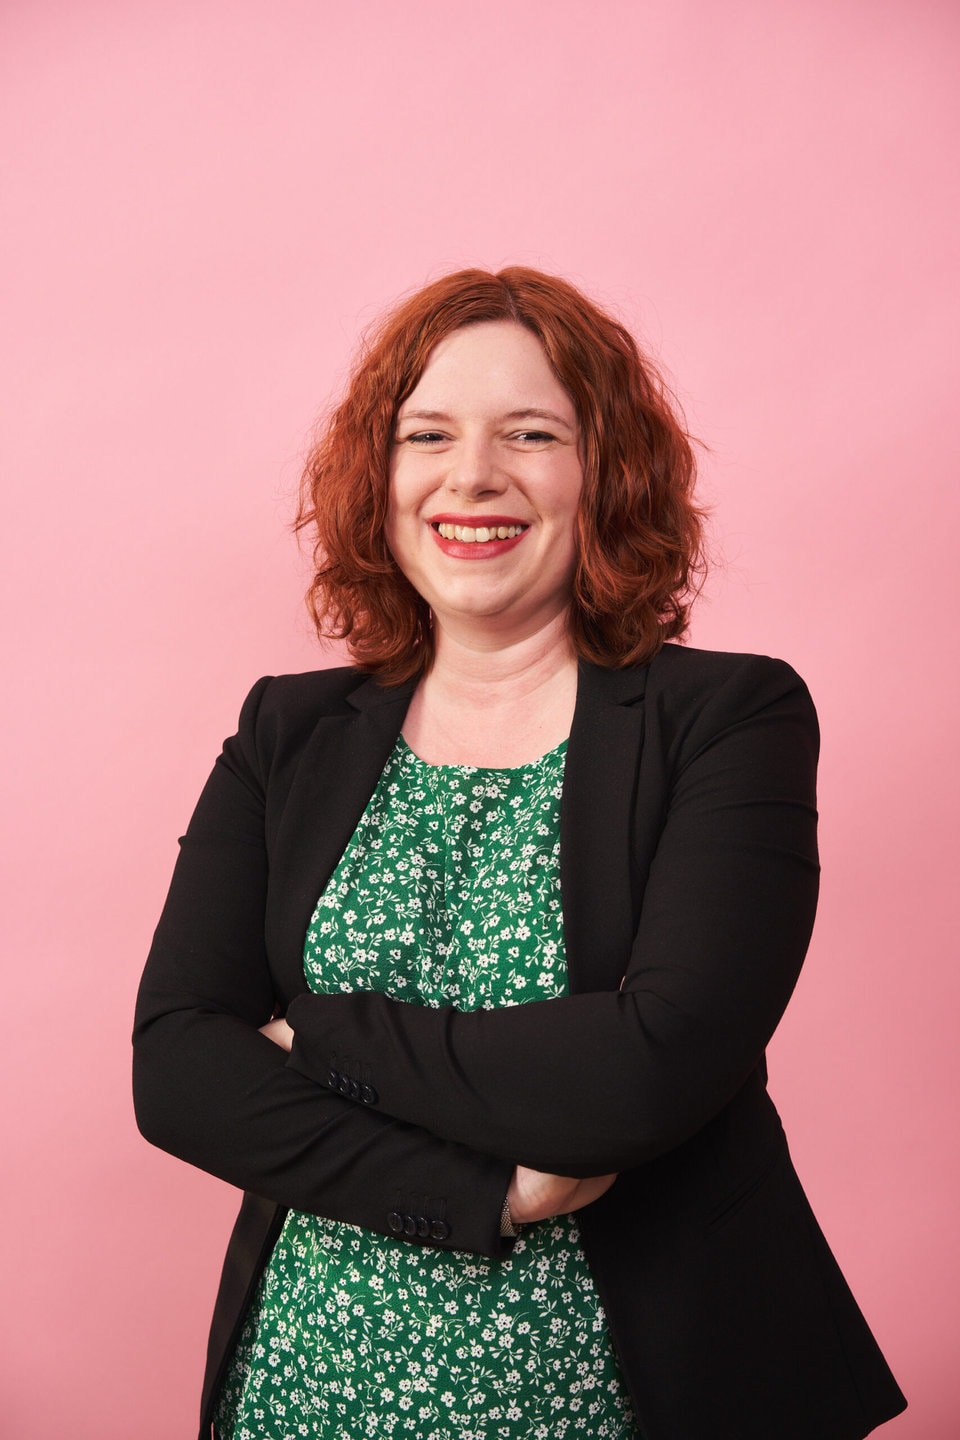 Portraitfoto von Lisa Dziobaka vor einem rosafarbenem Hintergrund.